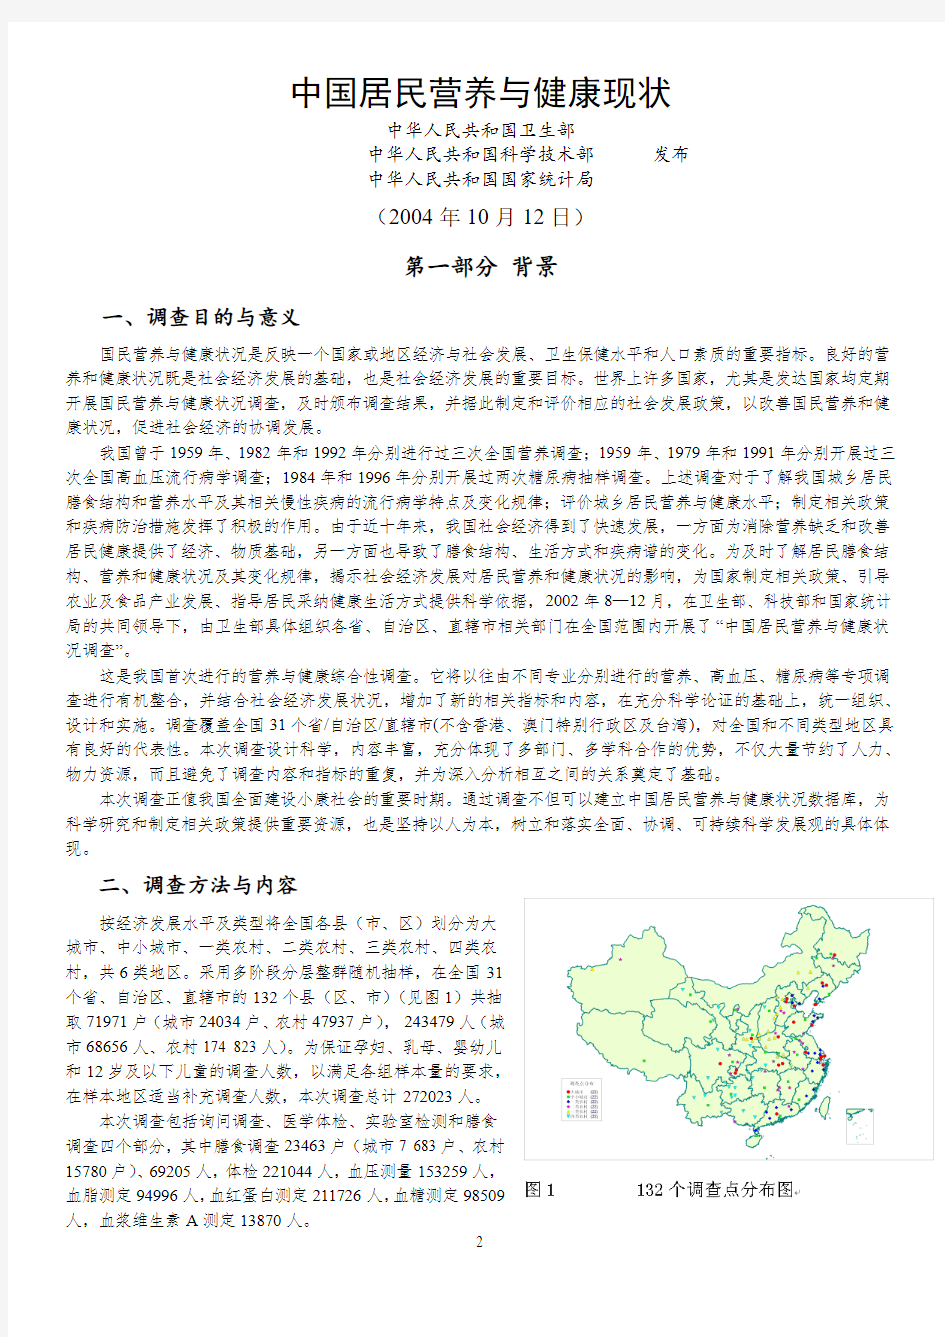 中国居民营养与健康现状(最新版)